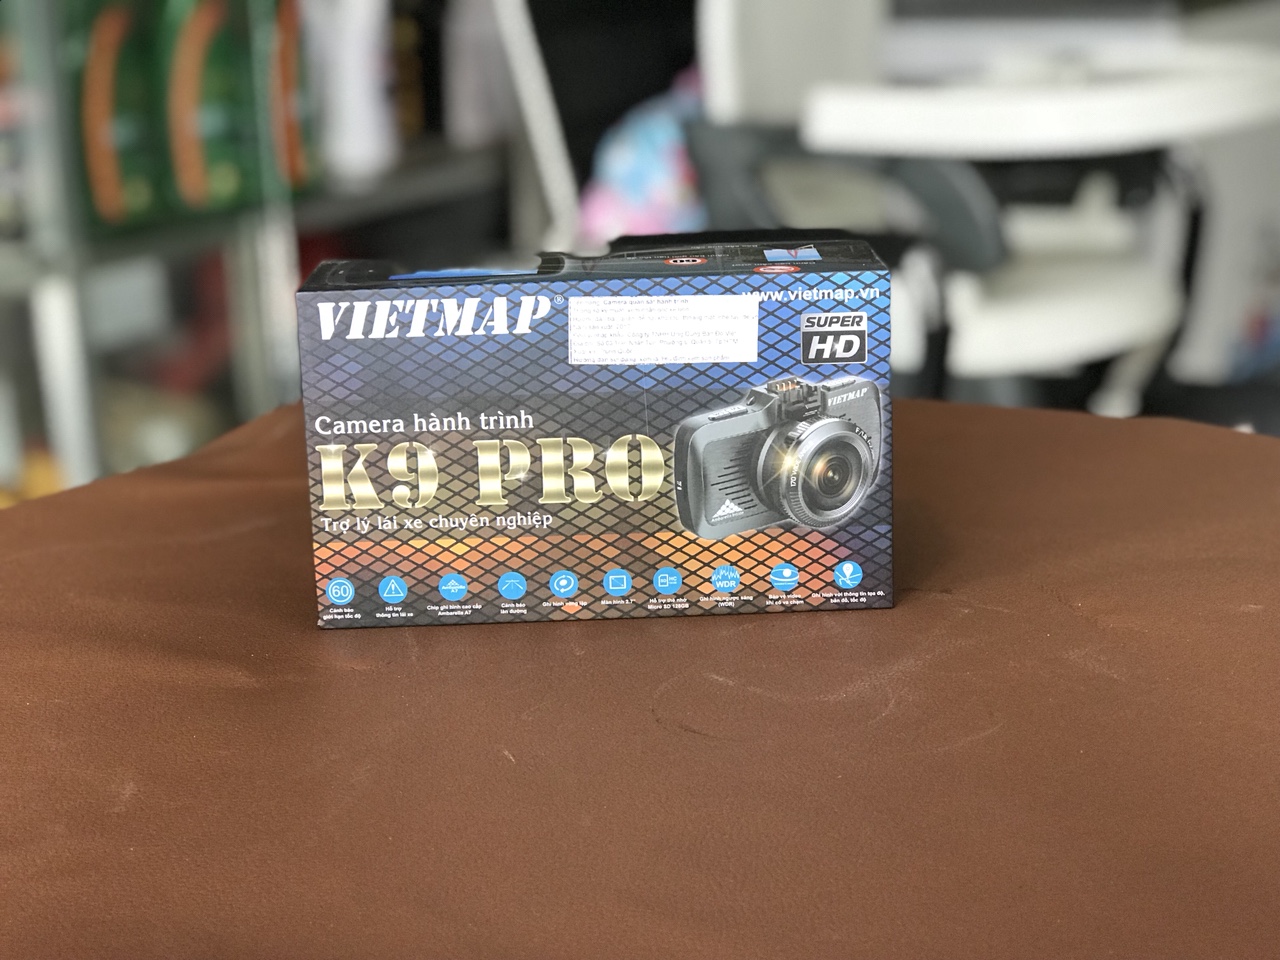 Camera hành trình trước và sau VietMap | Camera hành trình giá rẻ